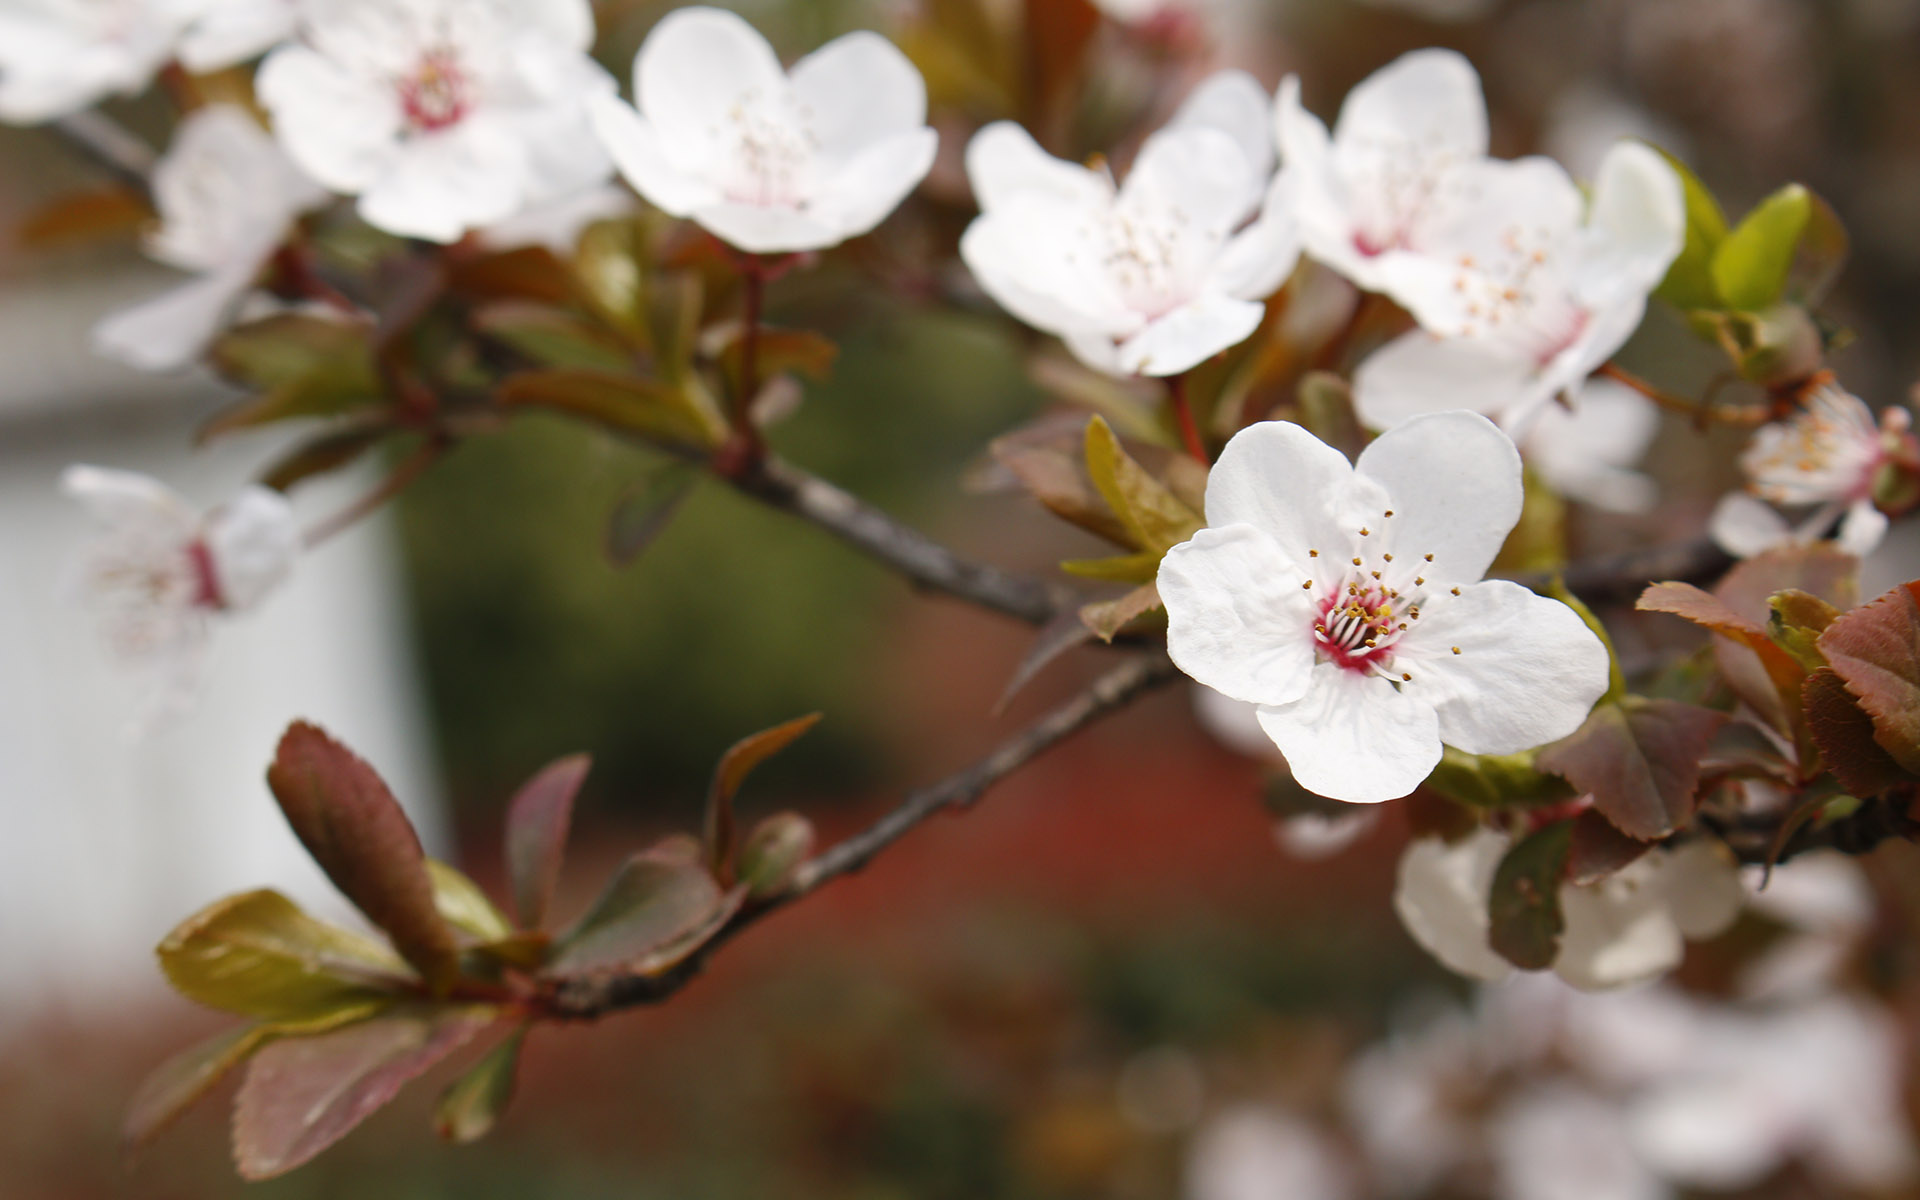 美丽图片素材 唯美纯白樱花高清摄影图片